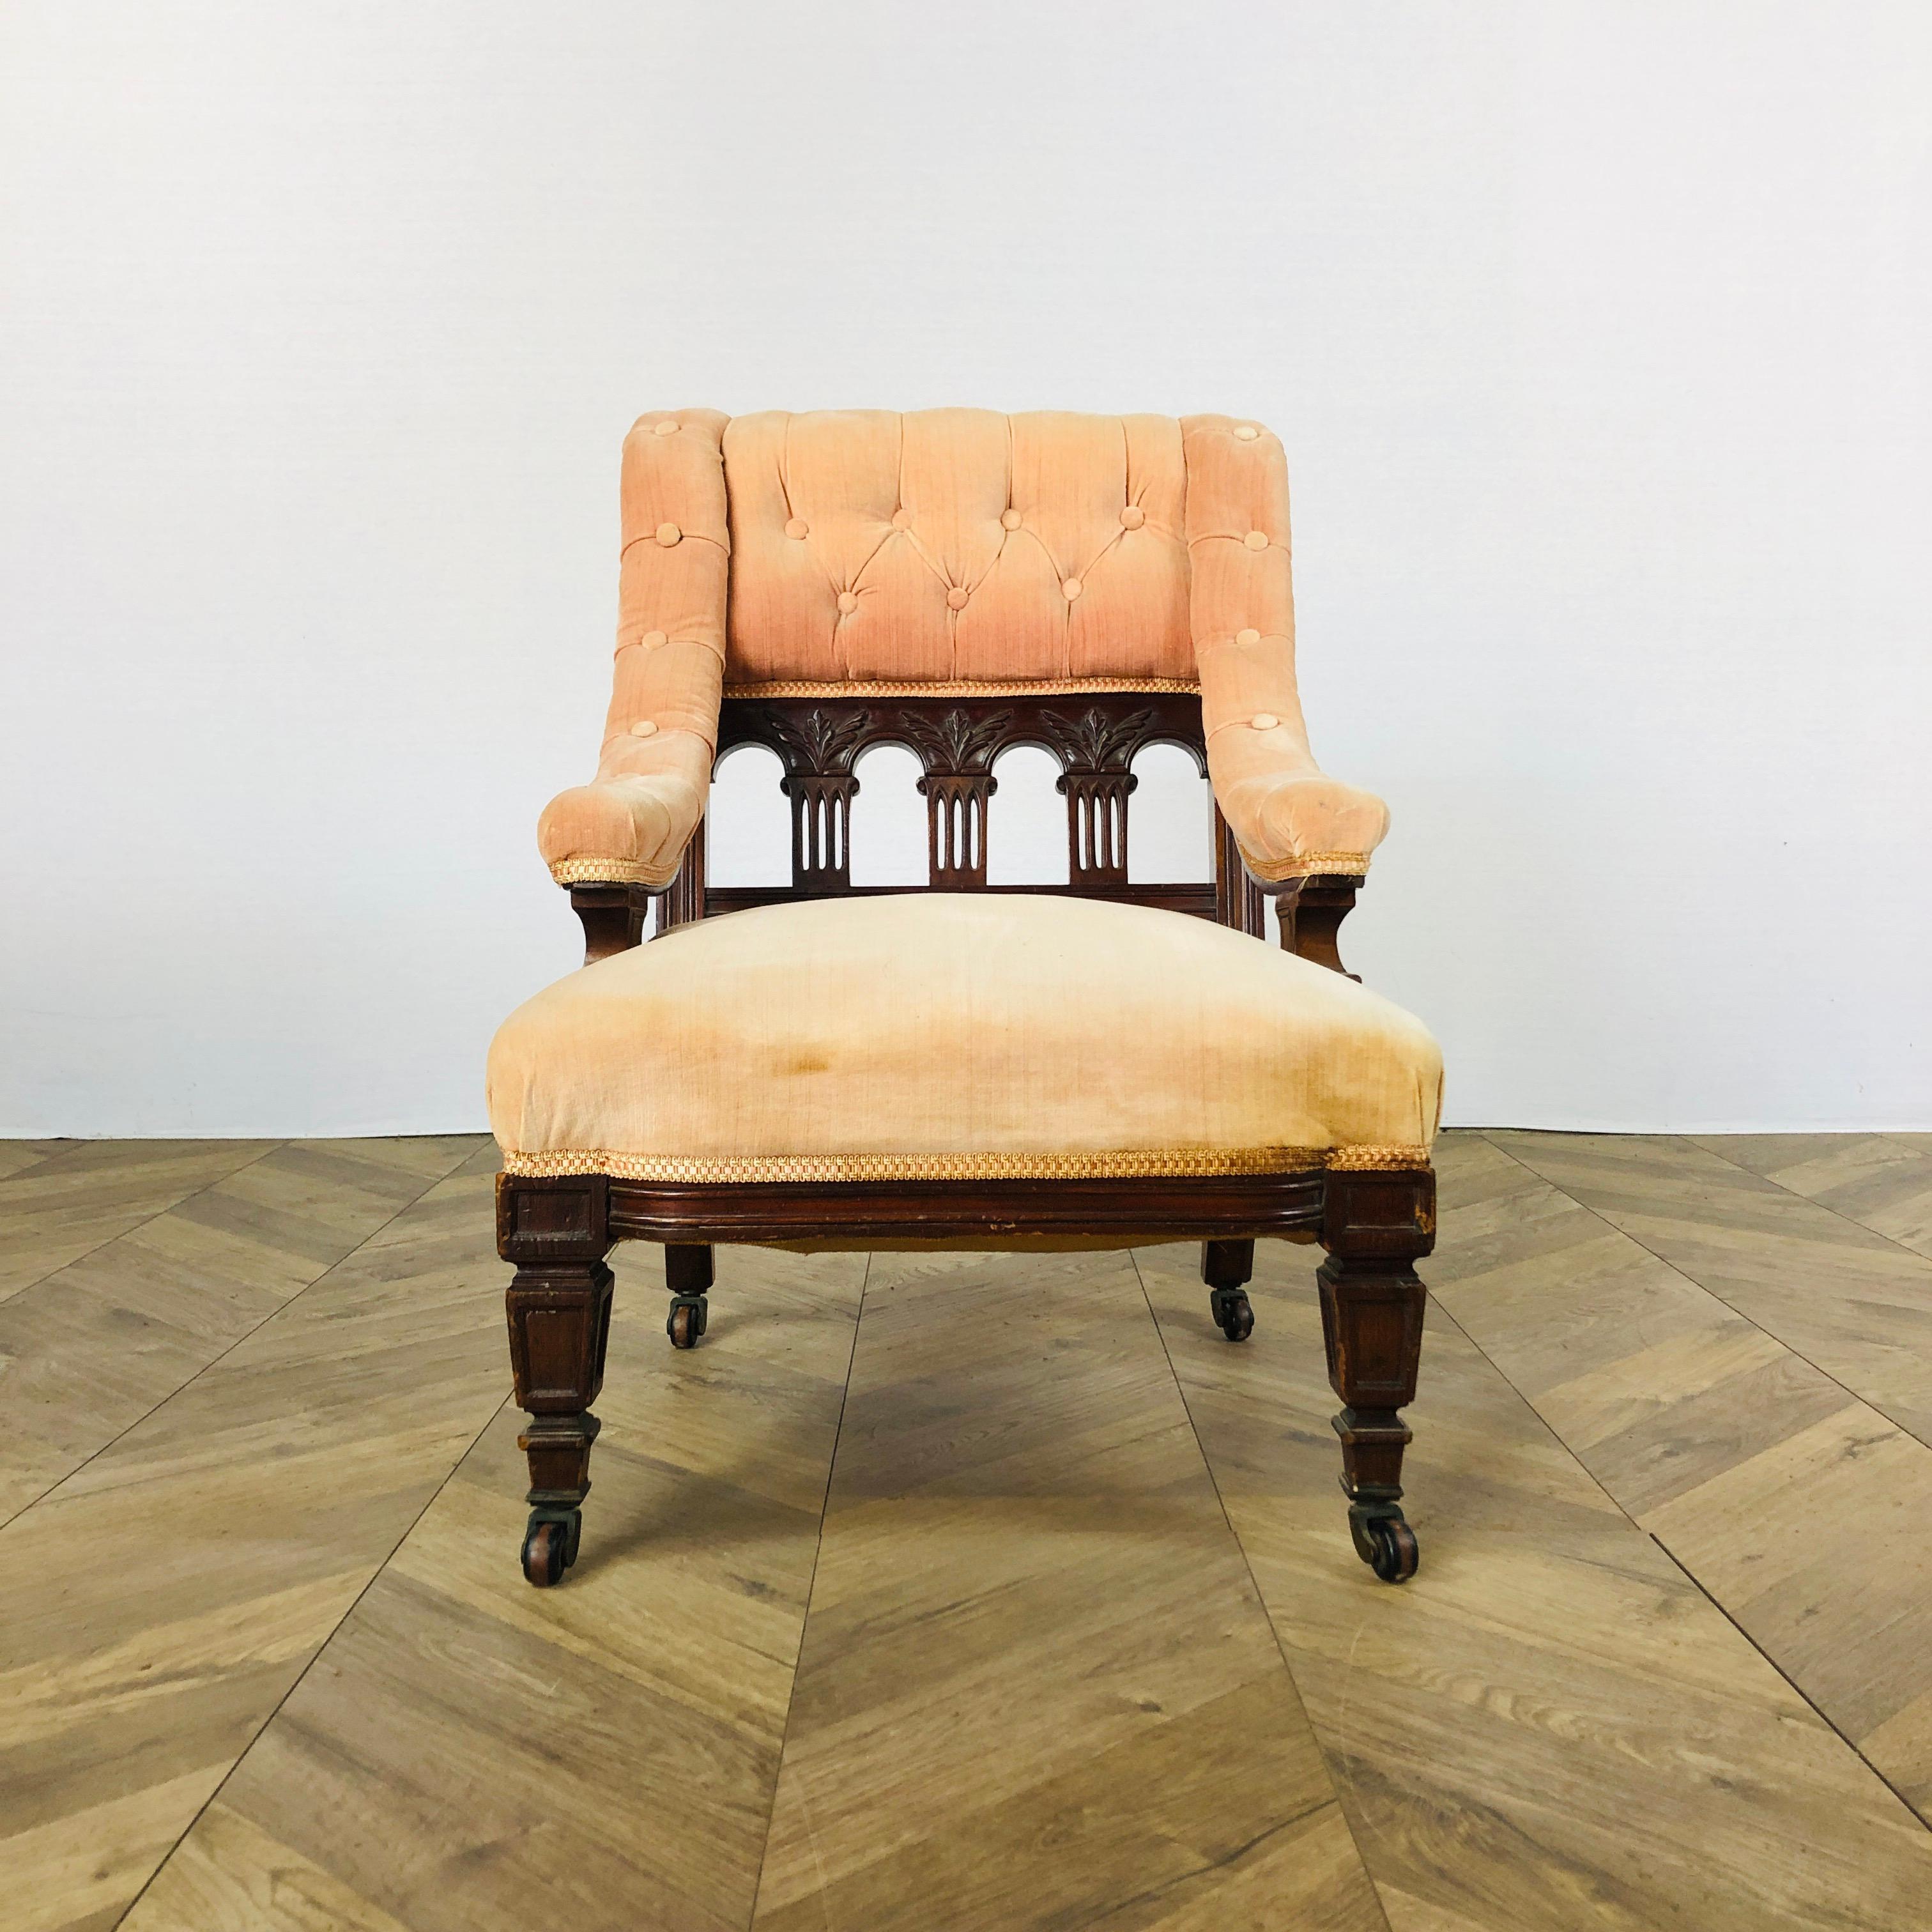 Ein ungewöhnlicher kleiner, antiker Boudoir- oder Krankenpflegestuhl. CIRCA 1880er Jahre,

Der Stuhl wurde inmitten der viktorianischen Ästhetikbewegung hergestellt, hat niedrige Proportionen und ist in der Designmanier von Bruce James Talbert für